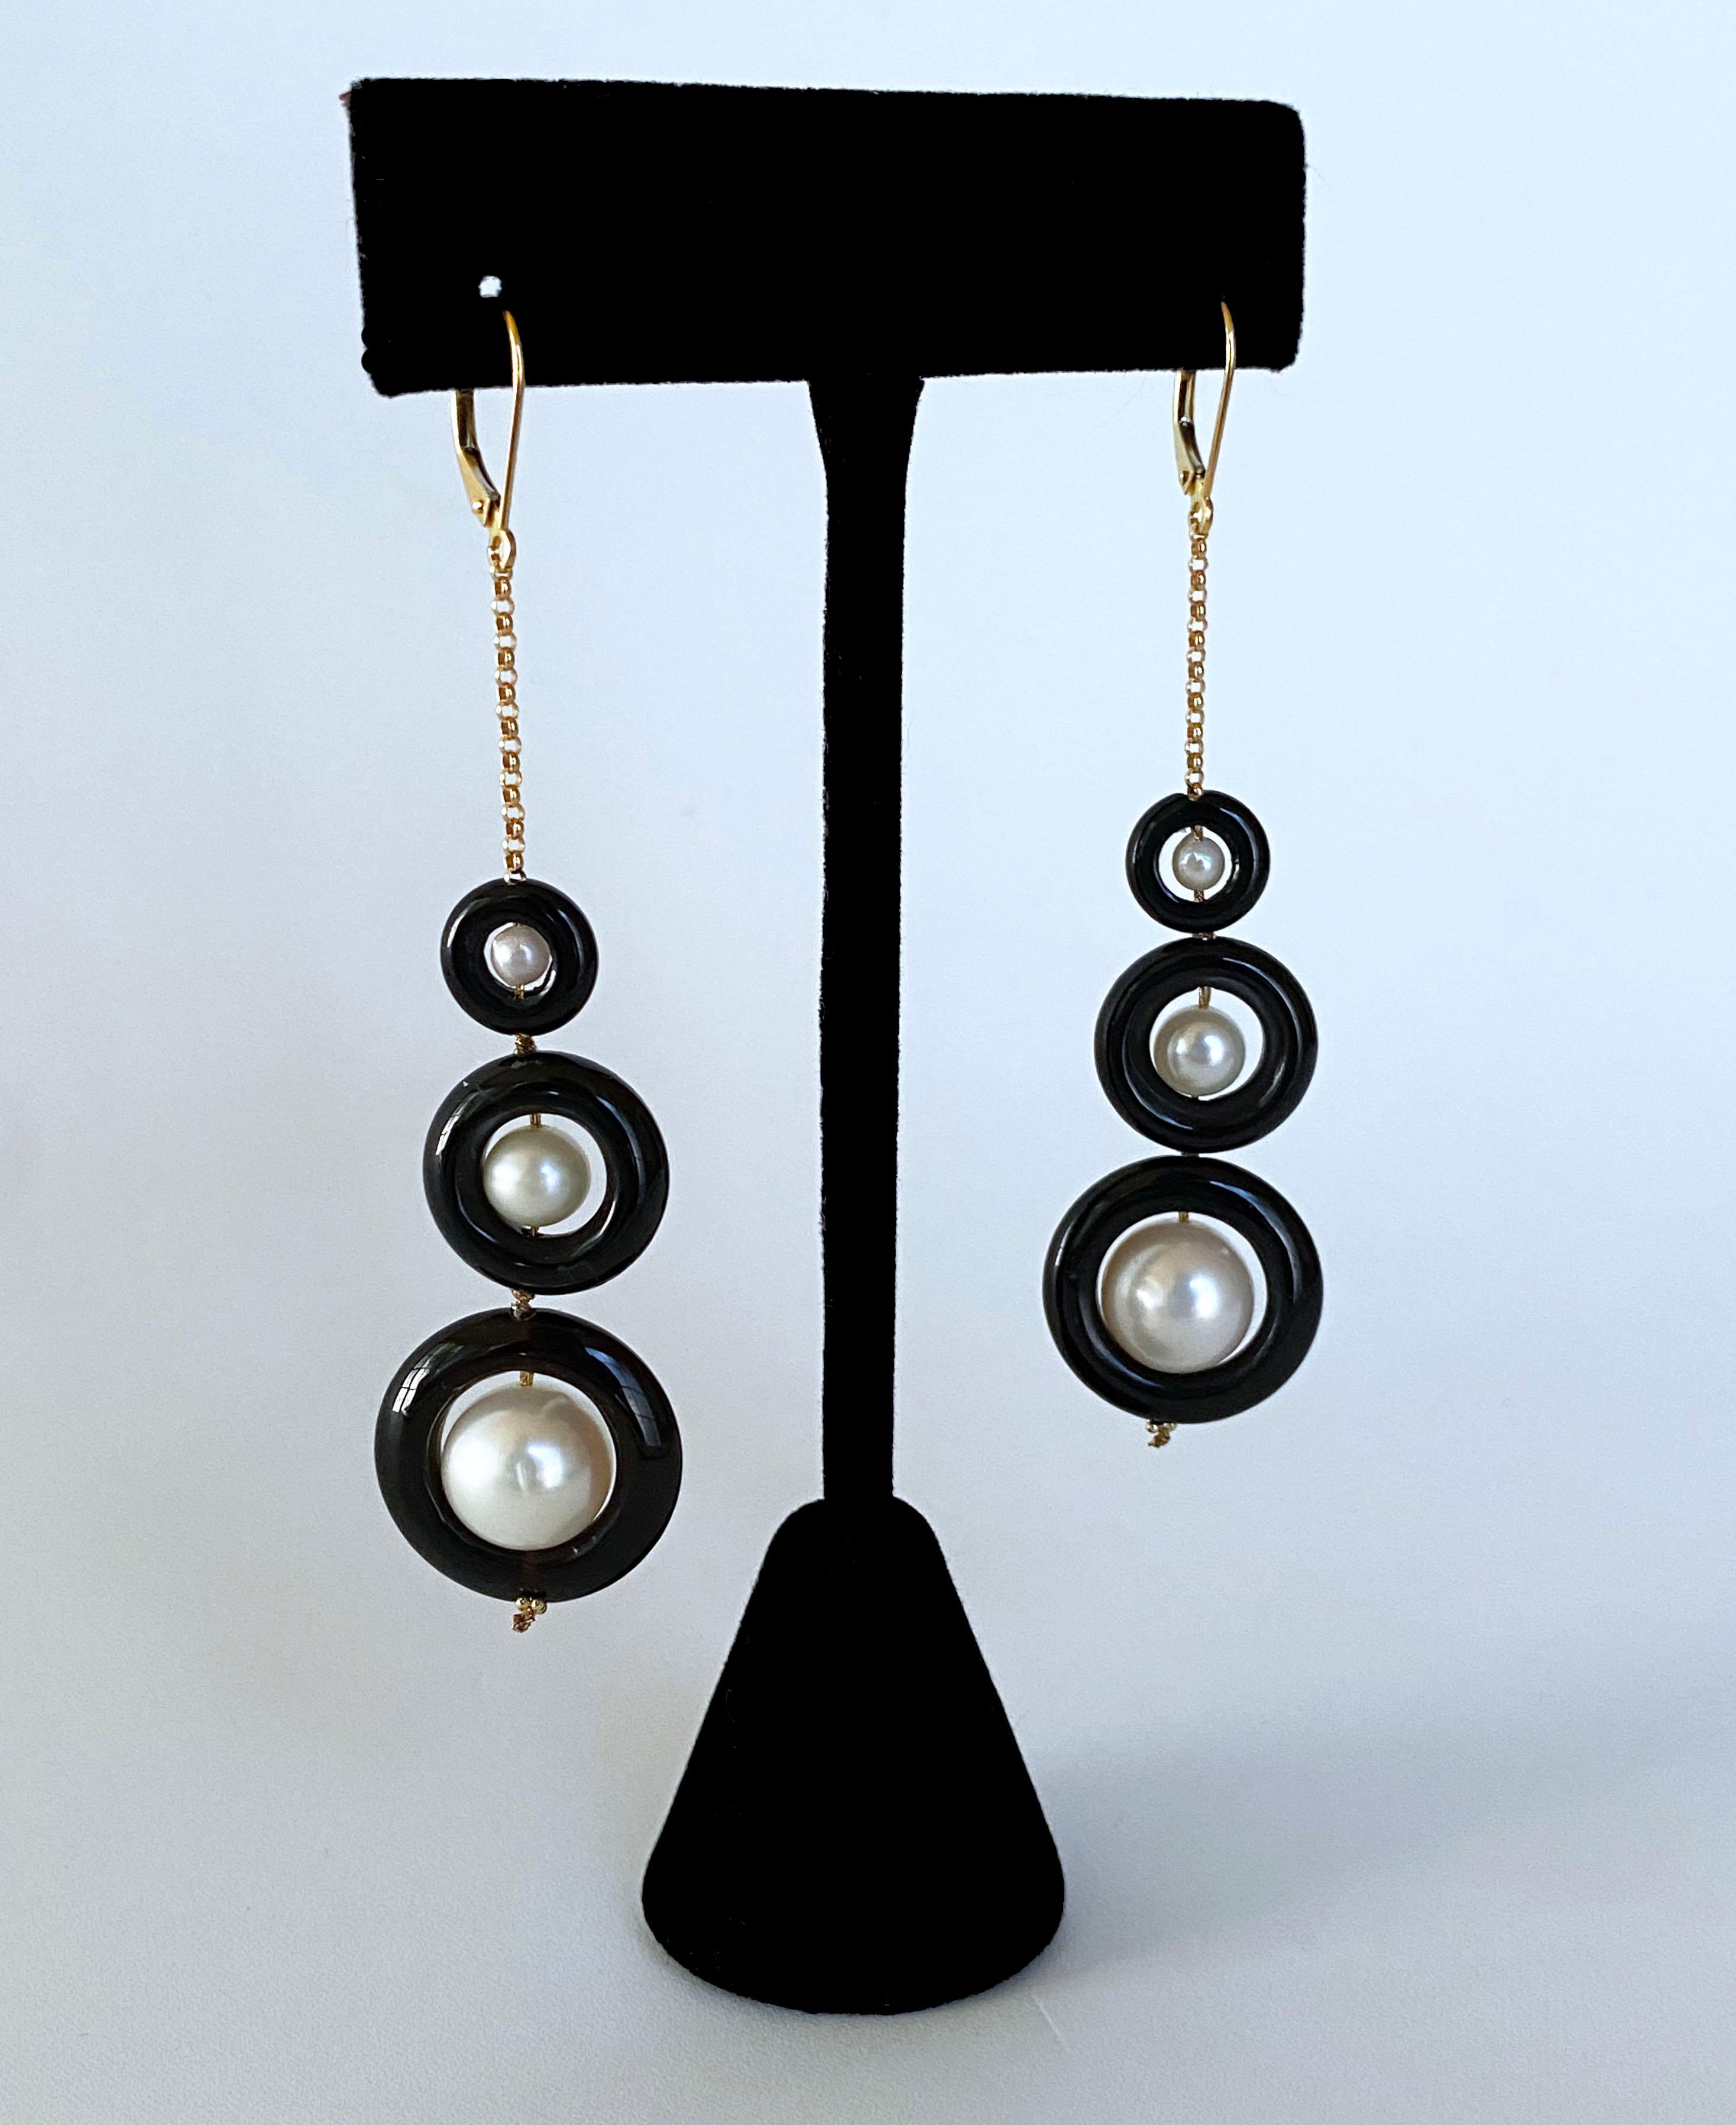 Magnifique paire de boucles d'oreilles de Marina J. Cette paire présente des perles blanches rondes avec un doux éclat irisé, toutes placées à l'intérieur de donuts d'Onyx noir ronds. Les perles et l'onyx noir sont de taille graduelle, ce qui permet